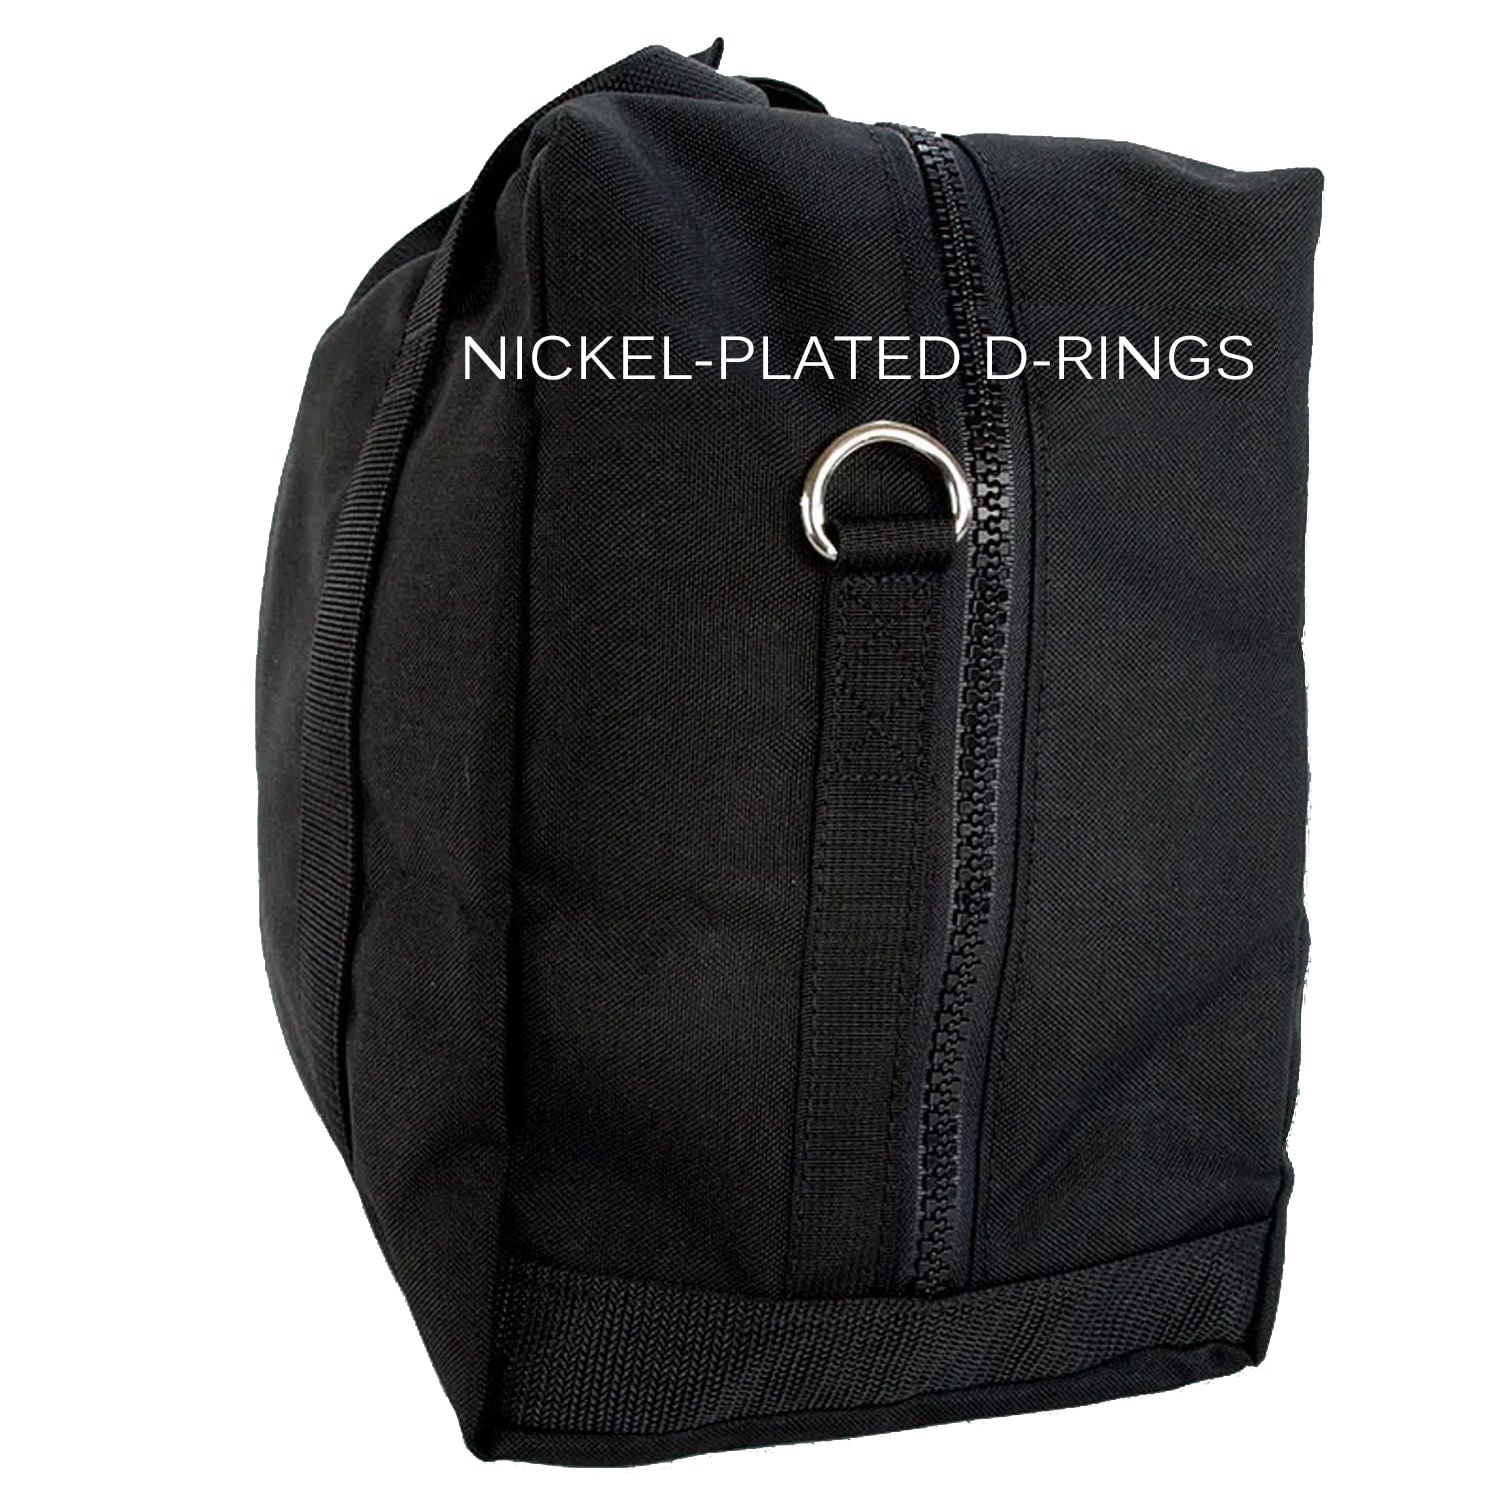 Nickel plated D- rings